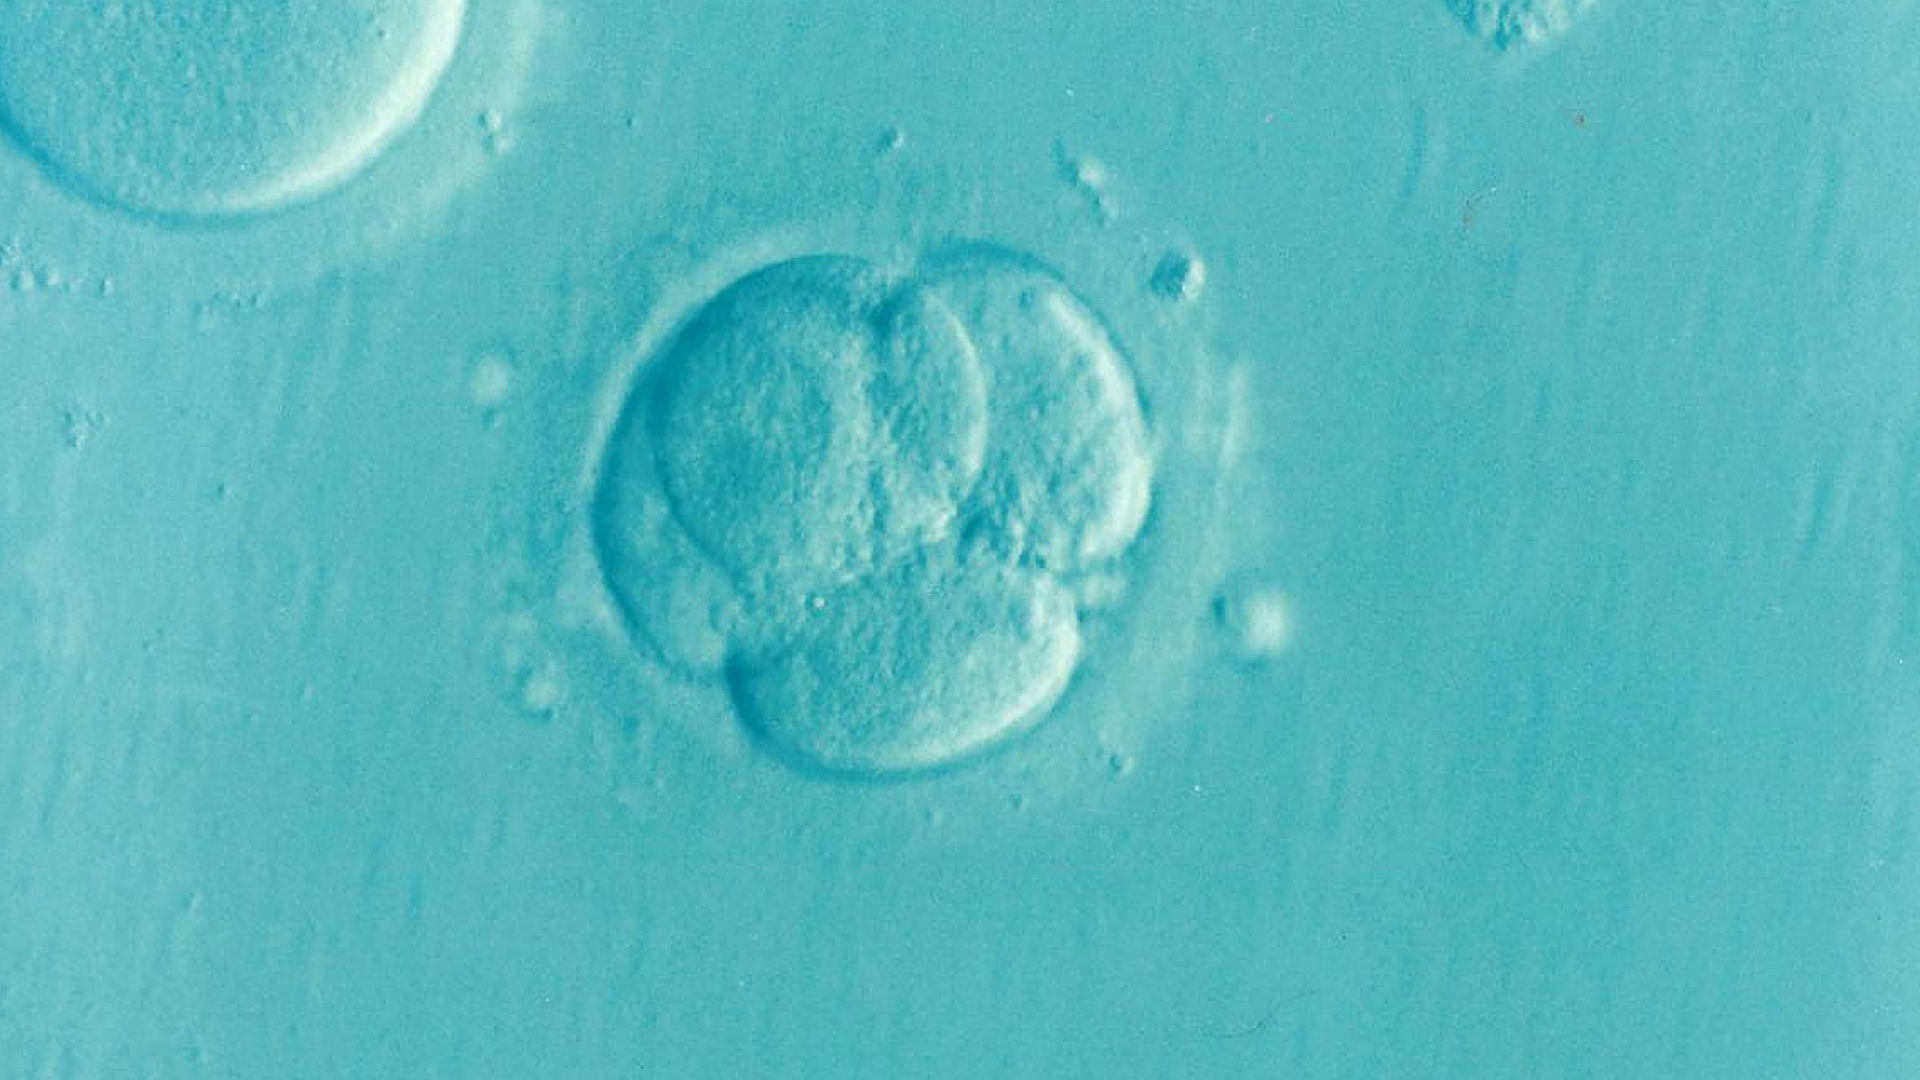 Les chercheurs américains ont modifié le génome d'embryons (Photo: Pixabay.com)